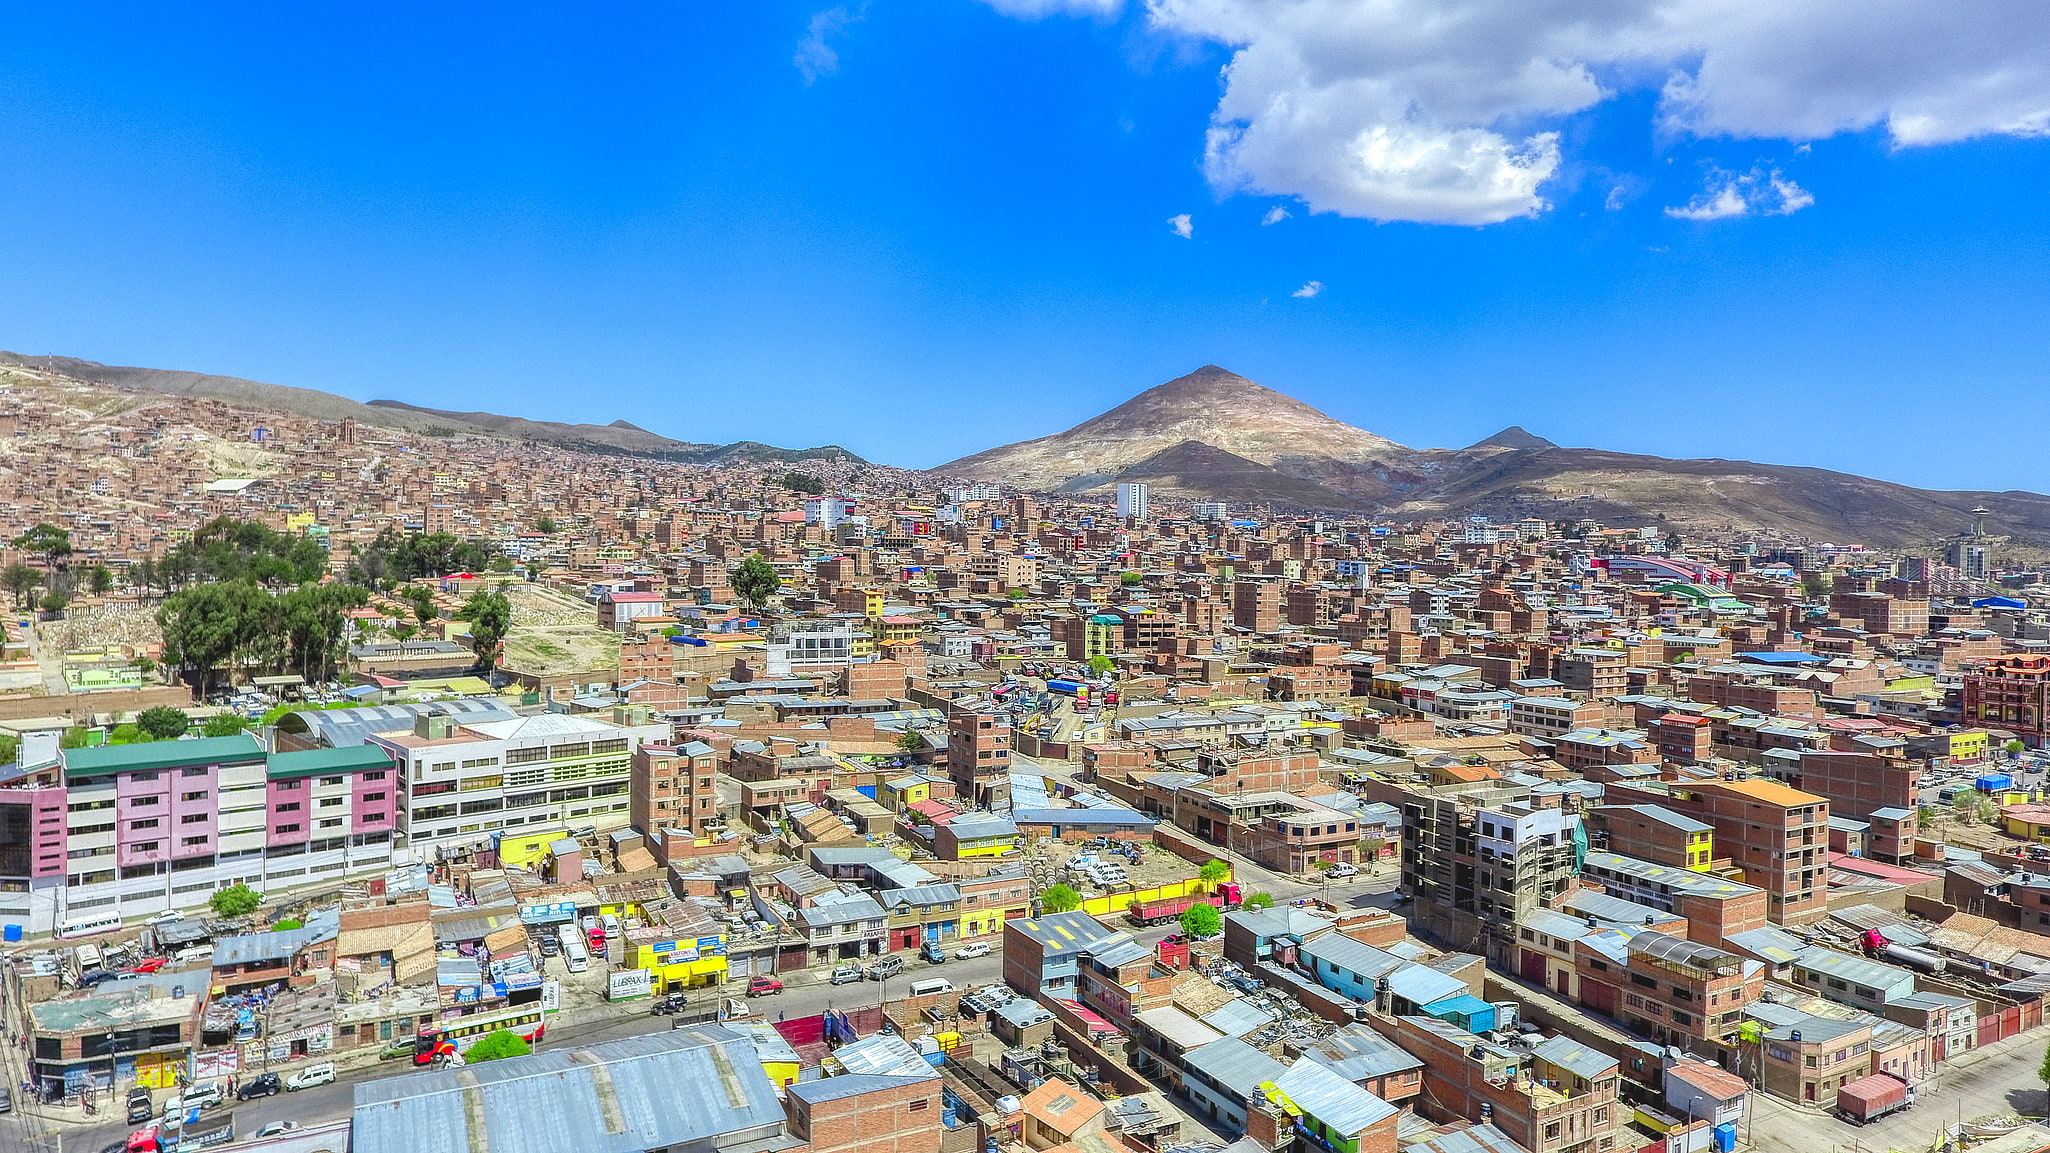 Potosí, Bolivie